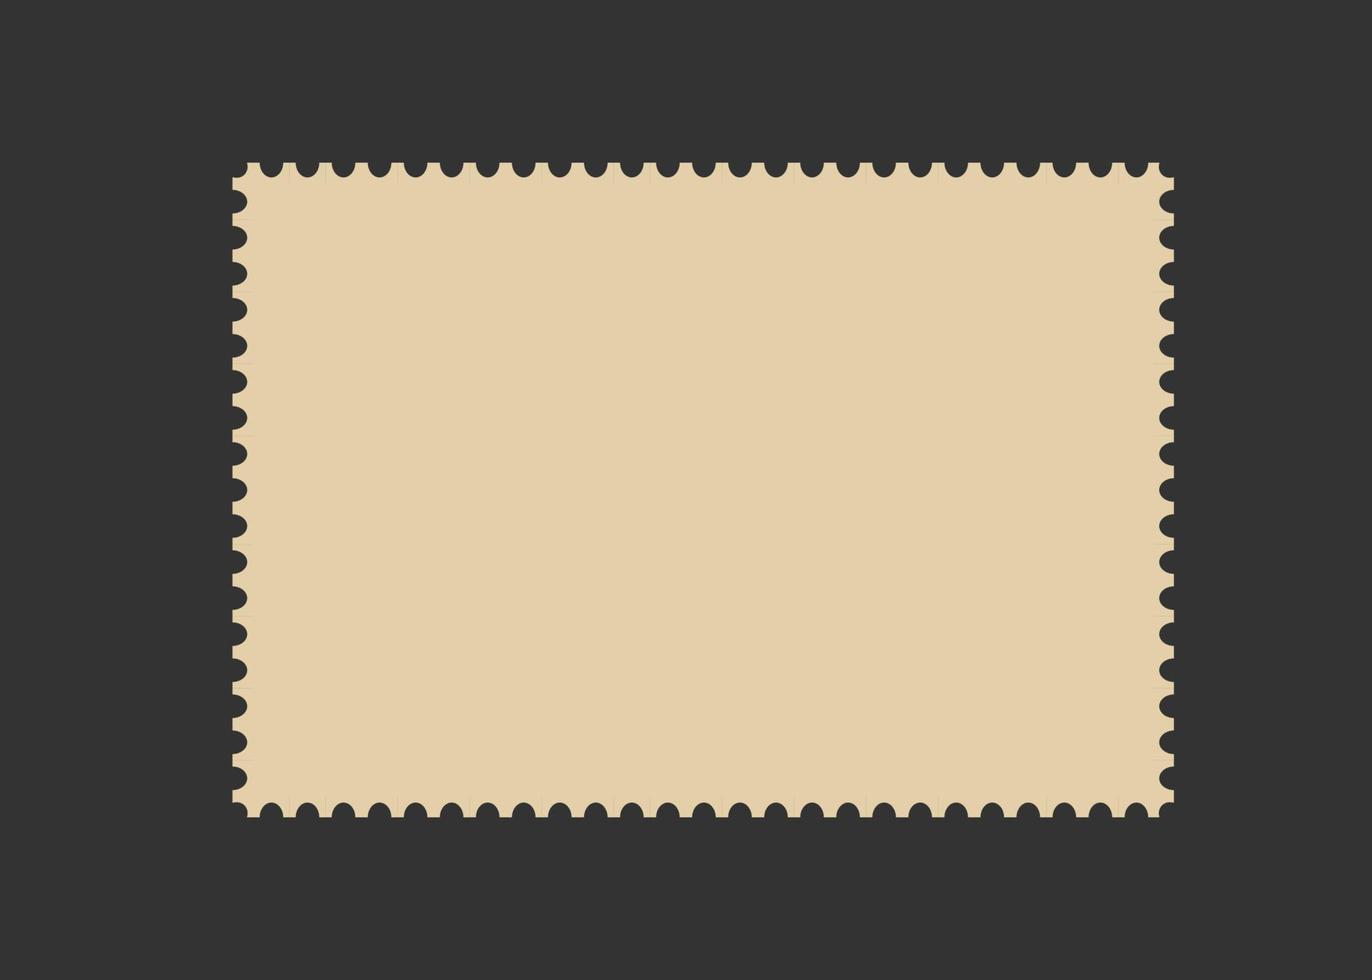 Briefmarkenrahmen. leere Grenzschablone für Postkarten und Briefe. leere rechteckige und quadratische briefmarke mit perforiertem rand. vektorillustration lokalisiert auf schwarzem hintergrund vektor